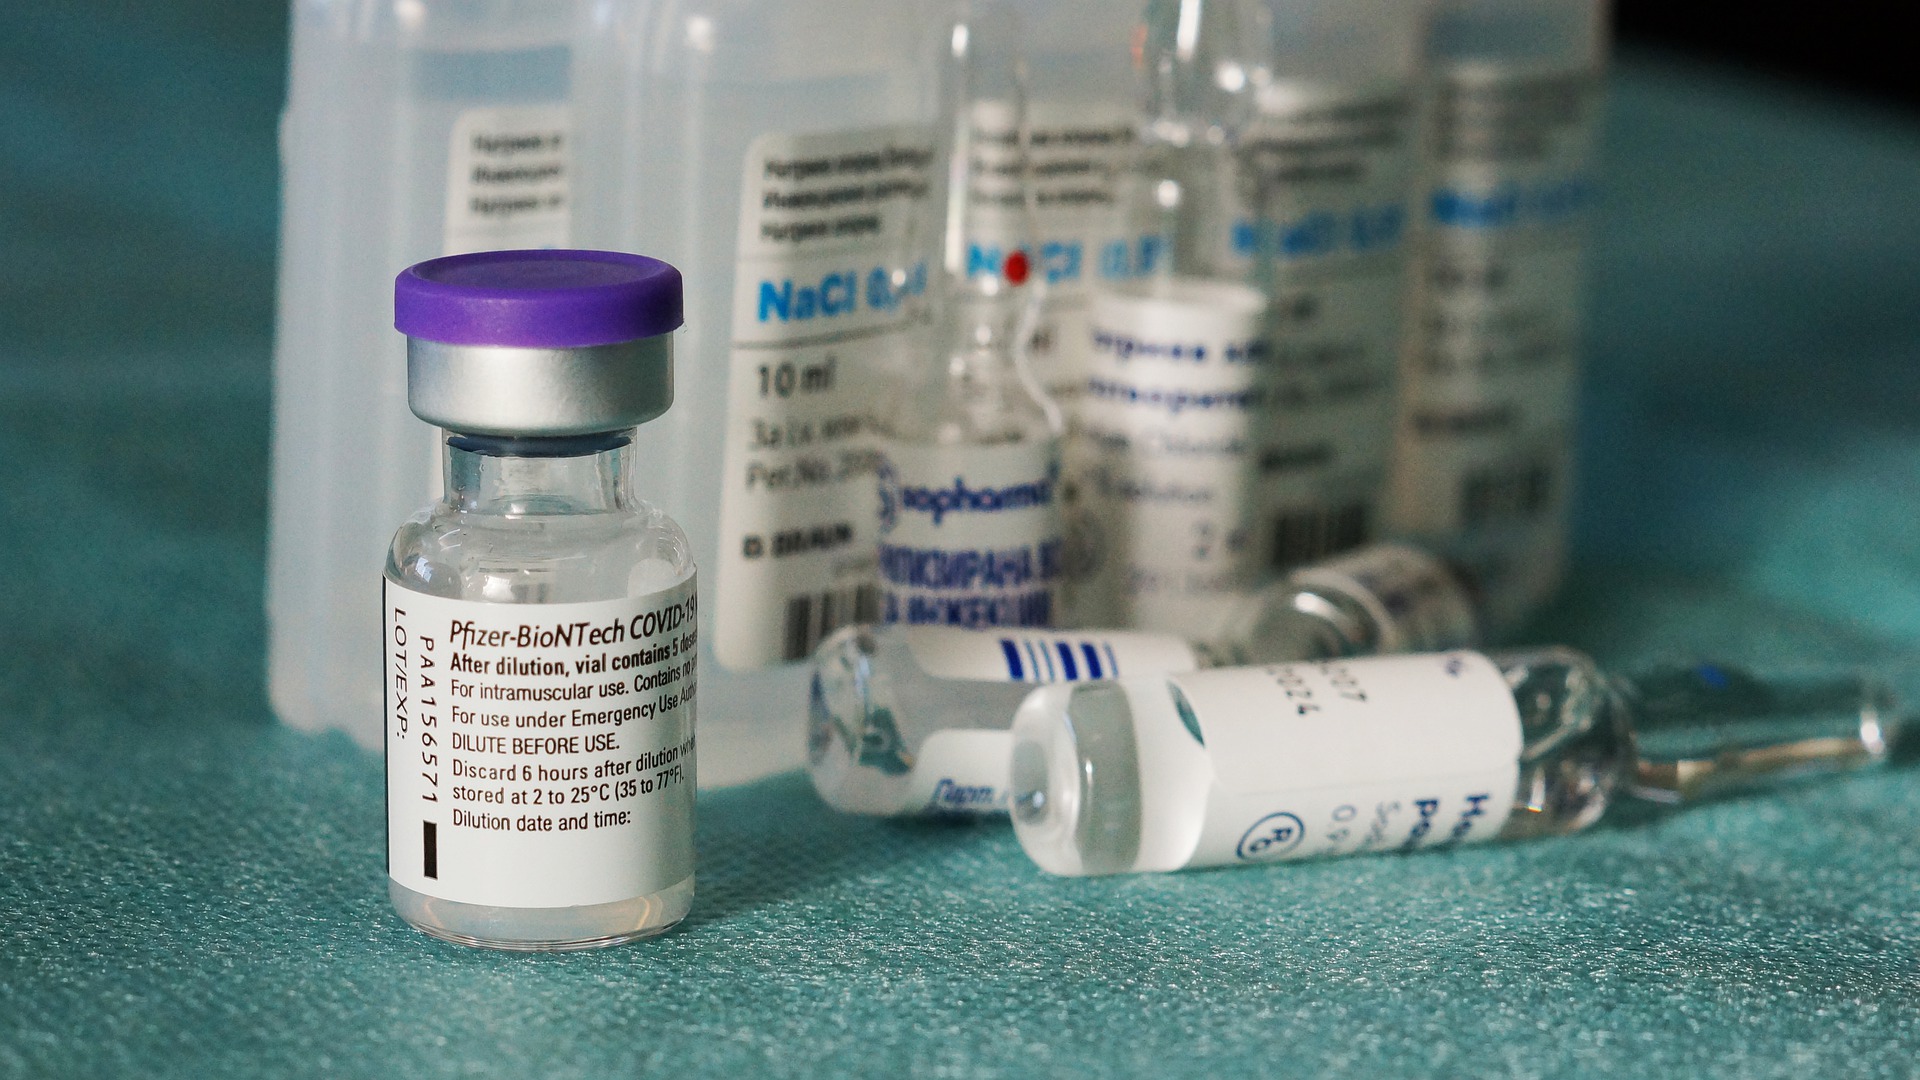 Bruselas y Pfizer-BioNTech modifican el contrato de compra de vacunas Covid-19